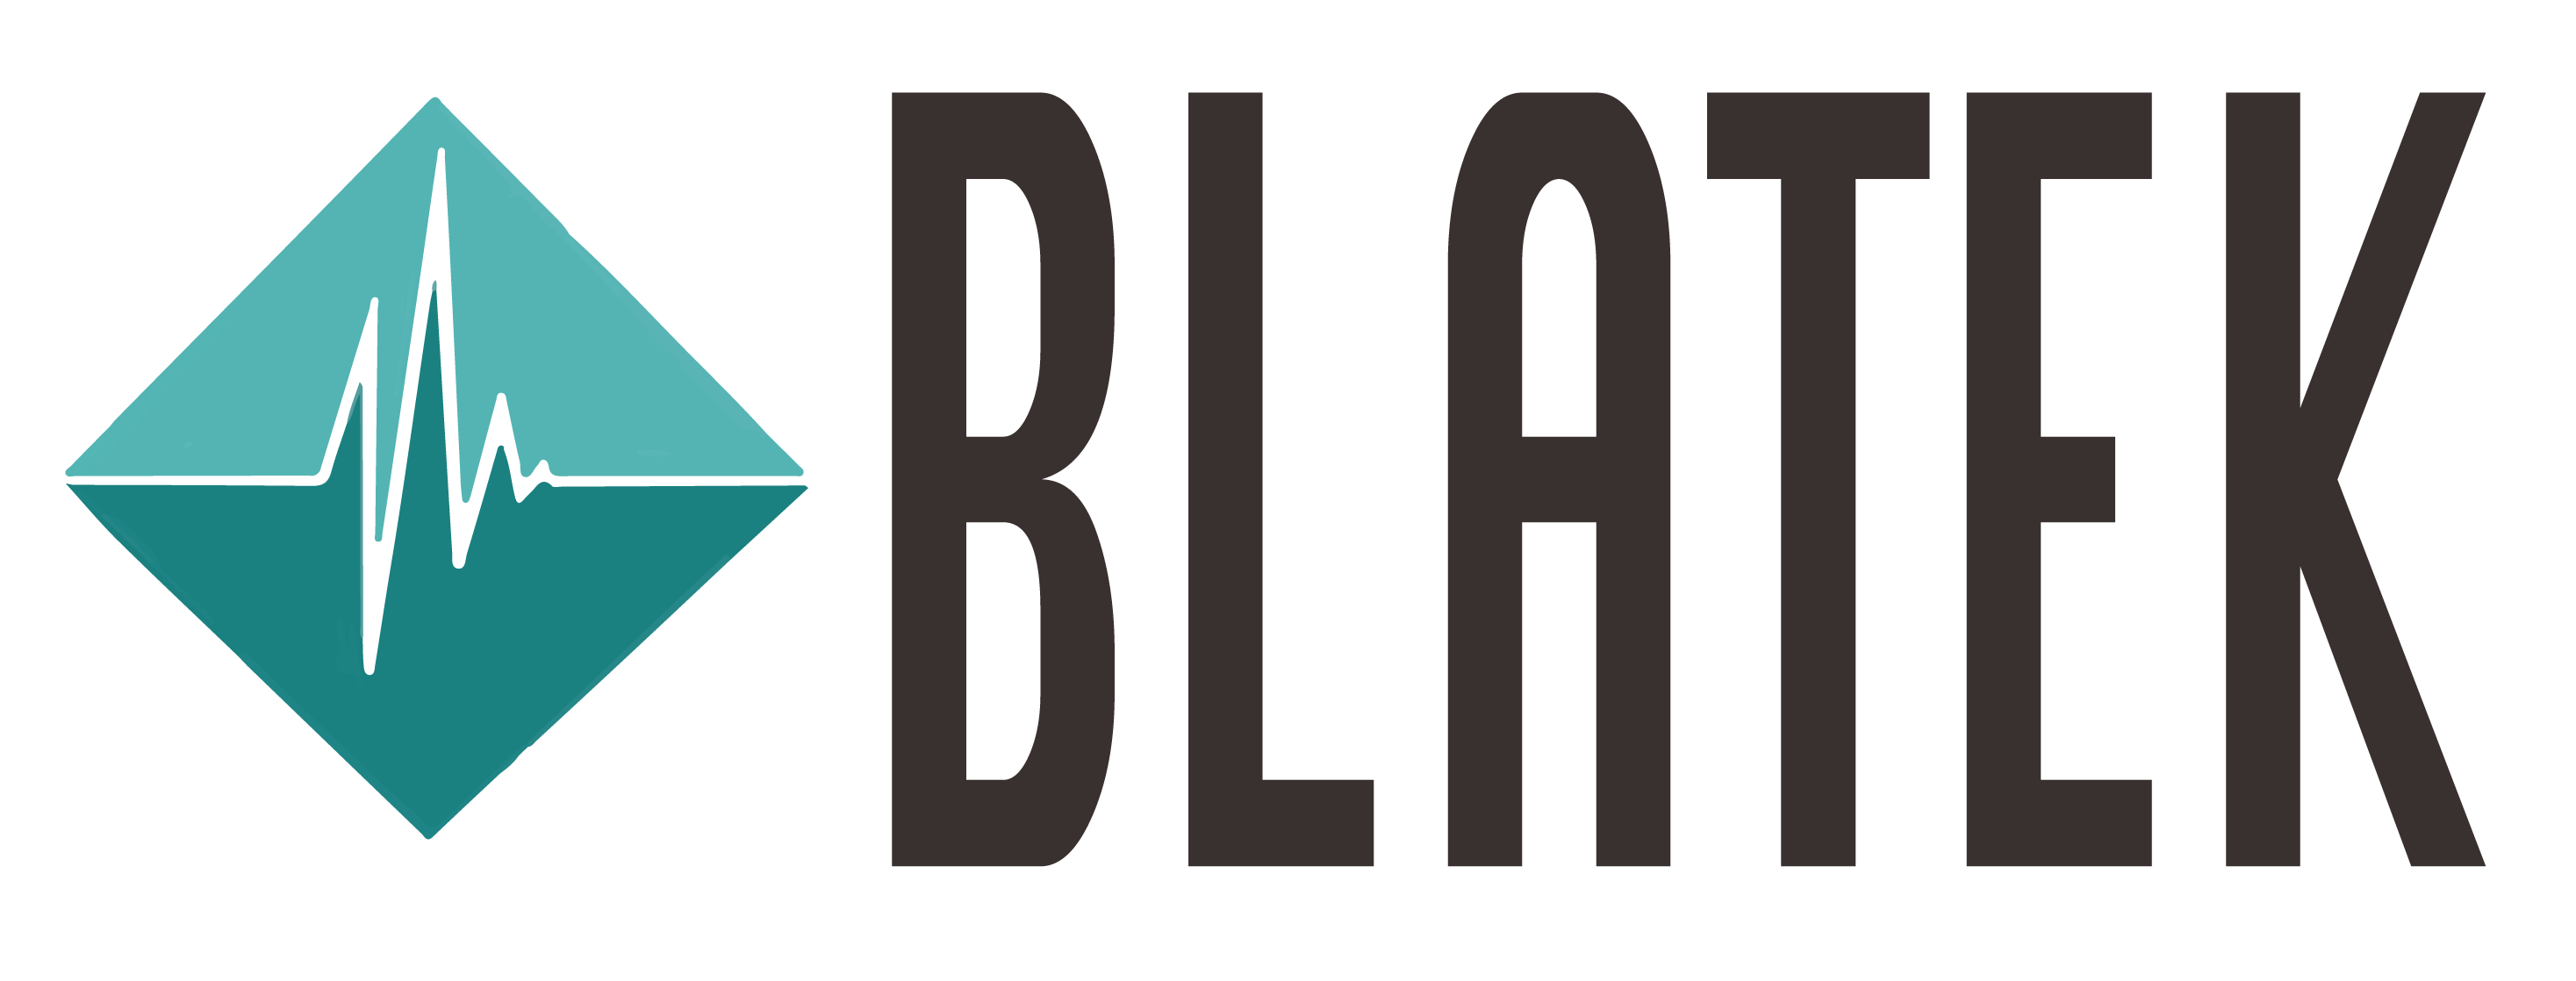 Blatek Industries, Inc.